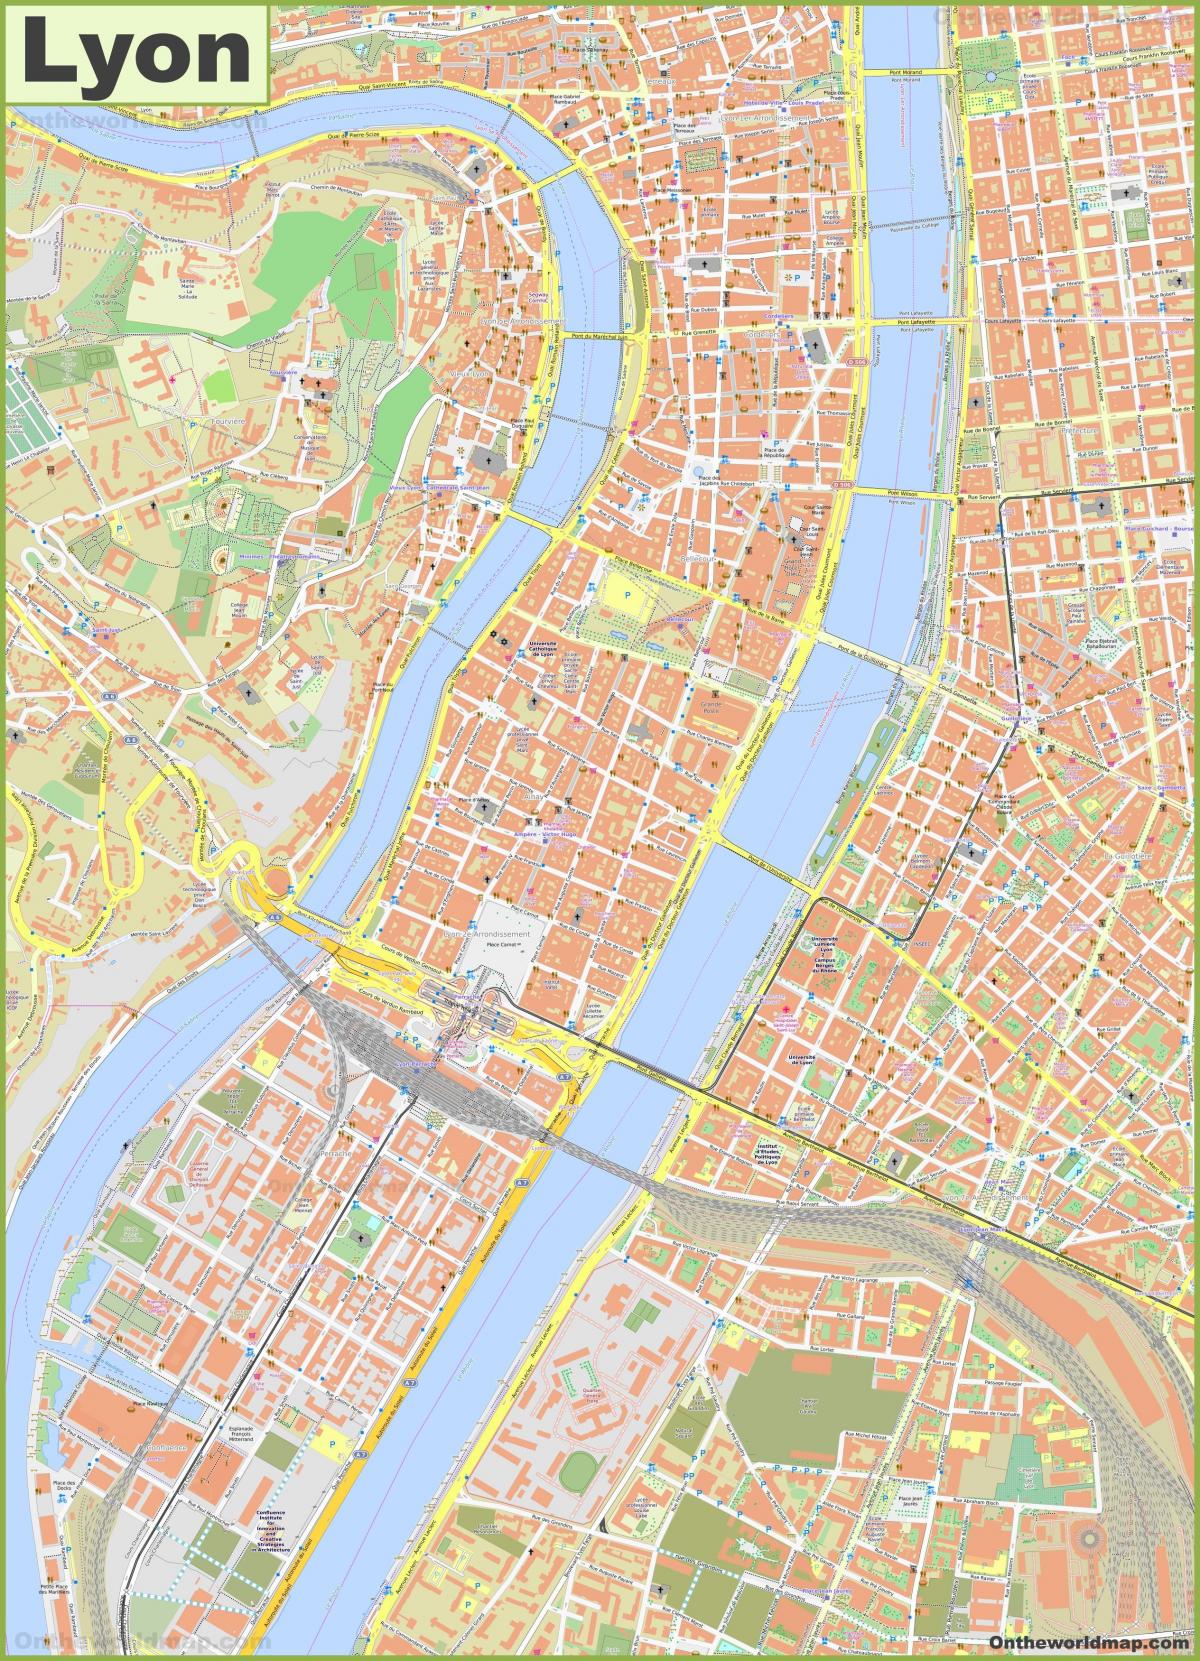 Stratenplan Lyon